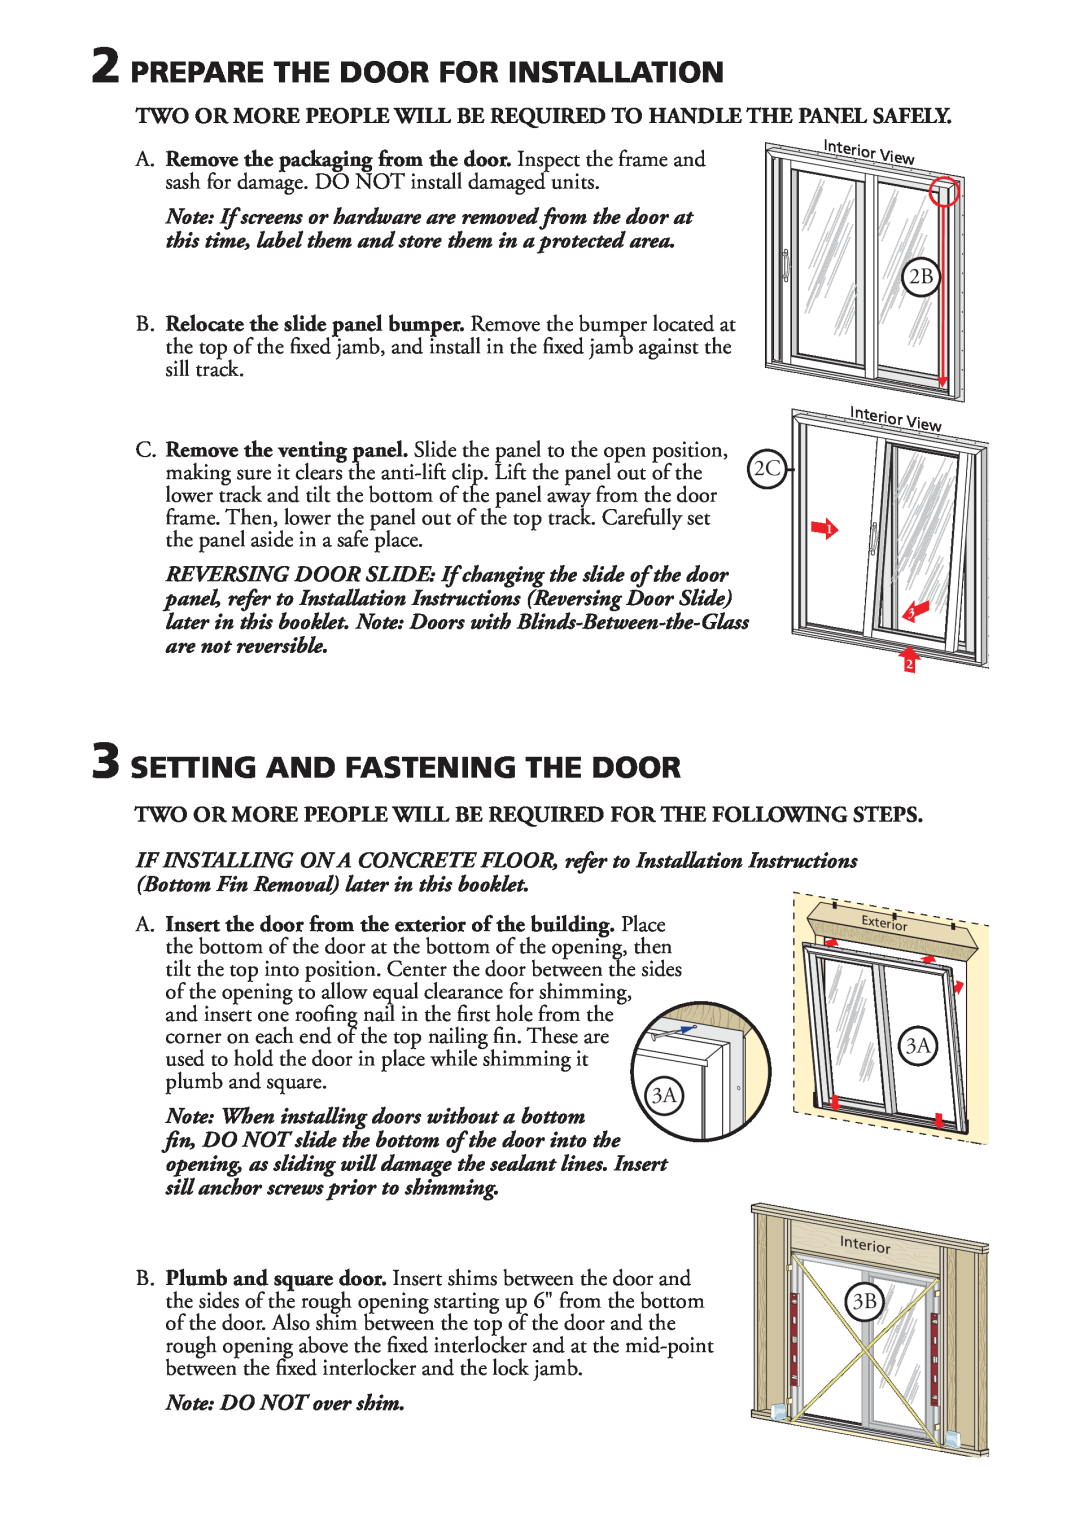 Pella V981553 installation instructions Prepare The Door For Installation, Setting And Fastening The Door 